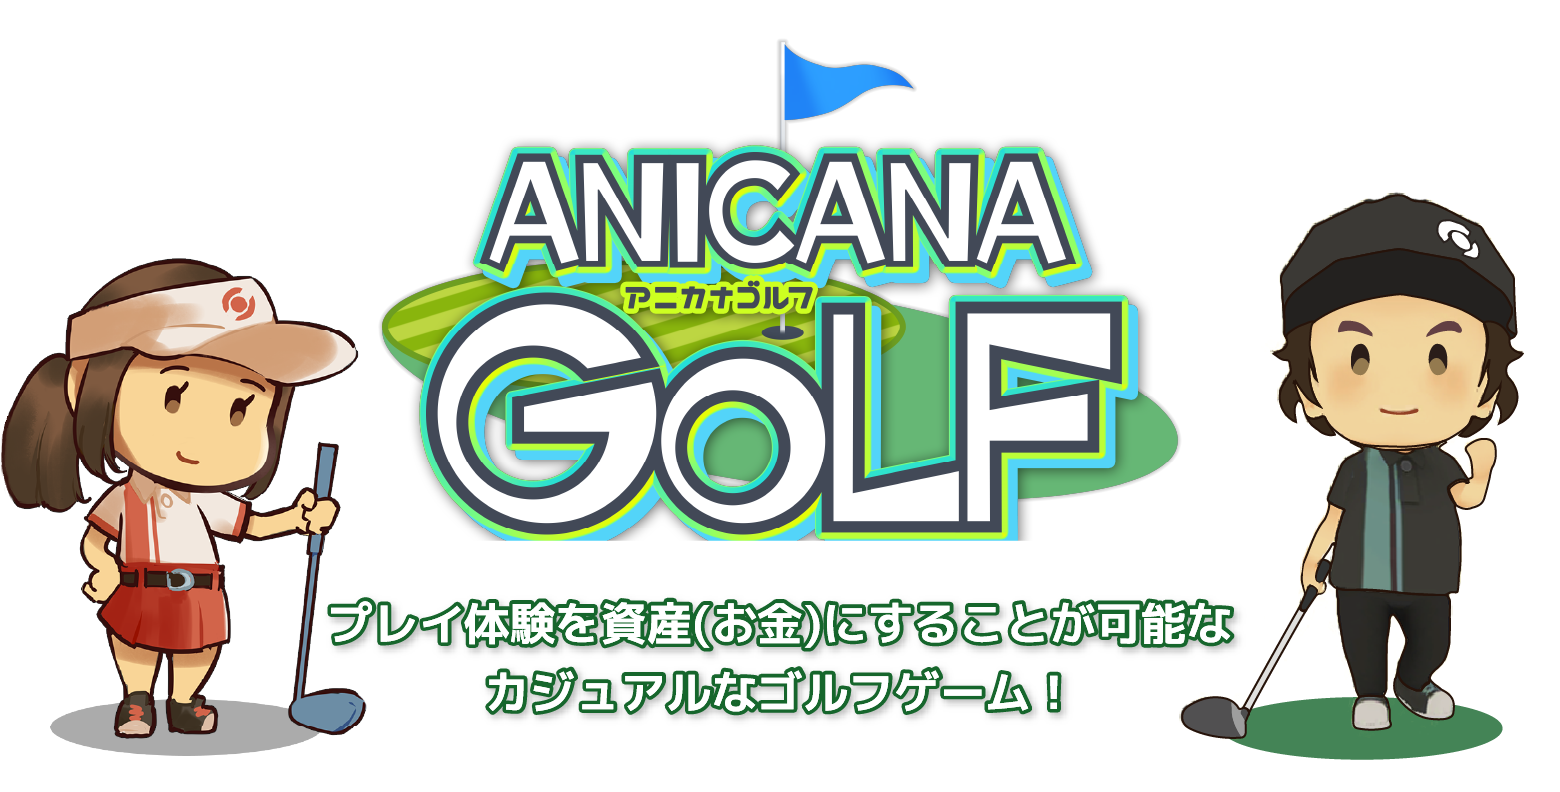 ANICANA GOLF（アニカナゴルフ）- プレイ体験を資産（お金）にすることが可能なカジュアルなゴルフゲーム！